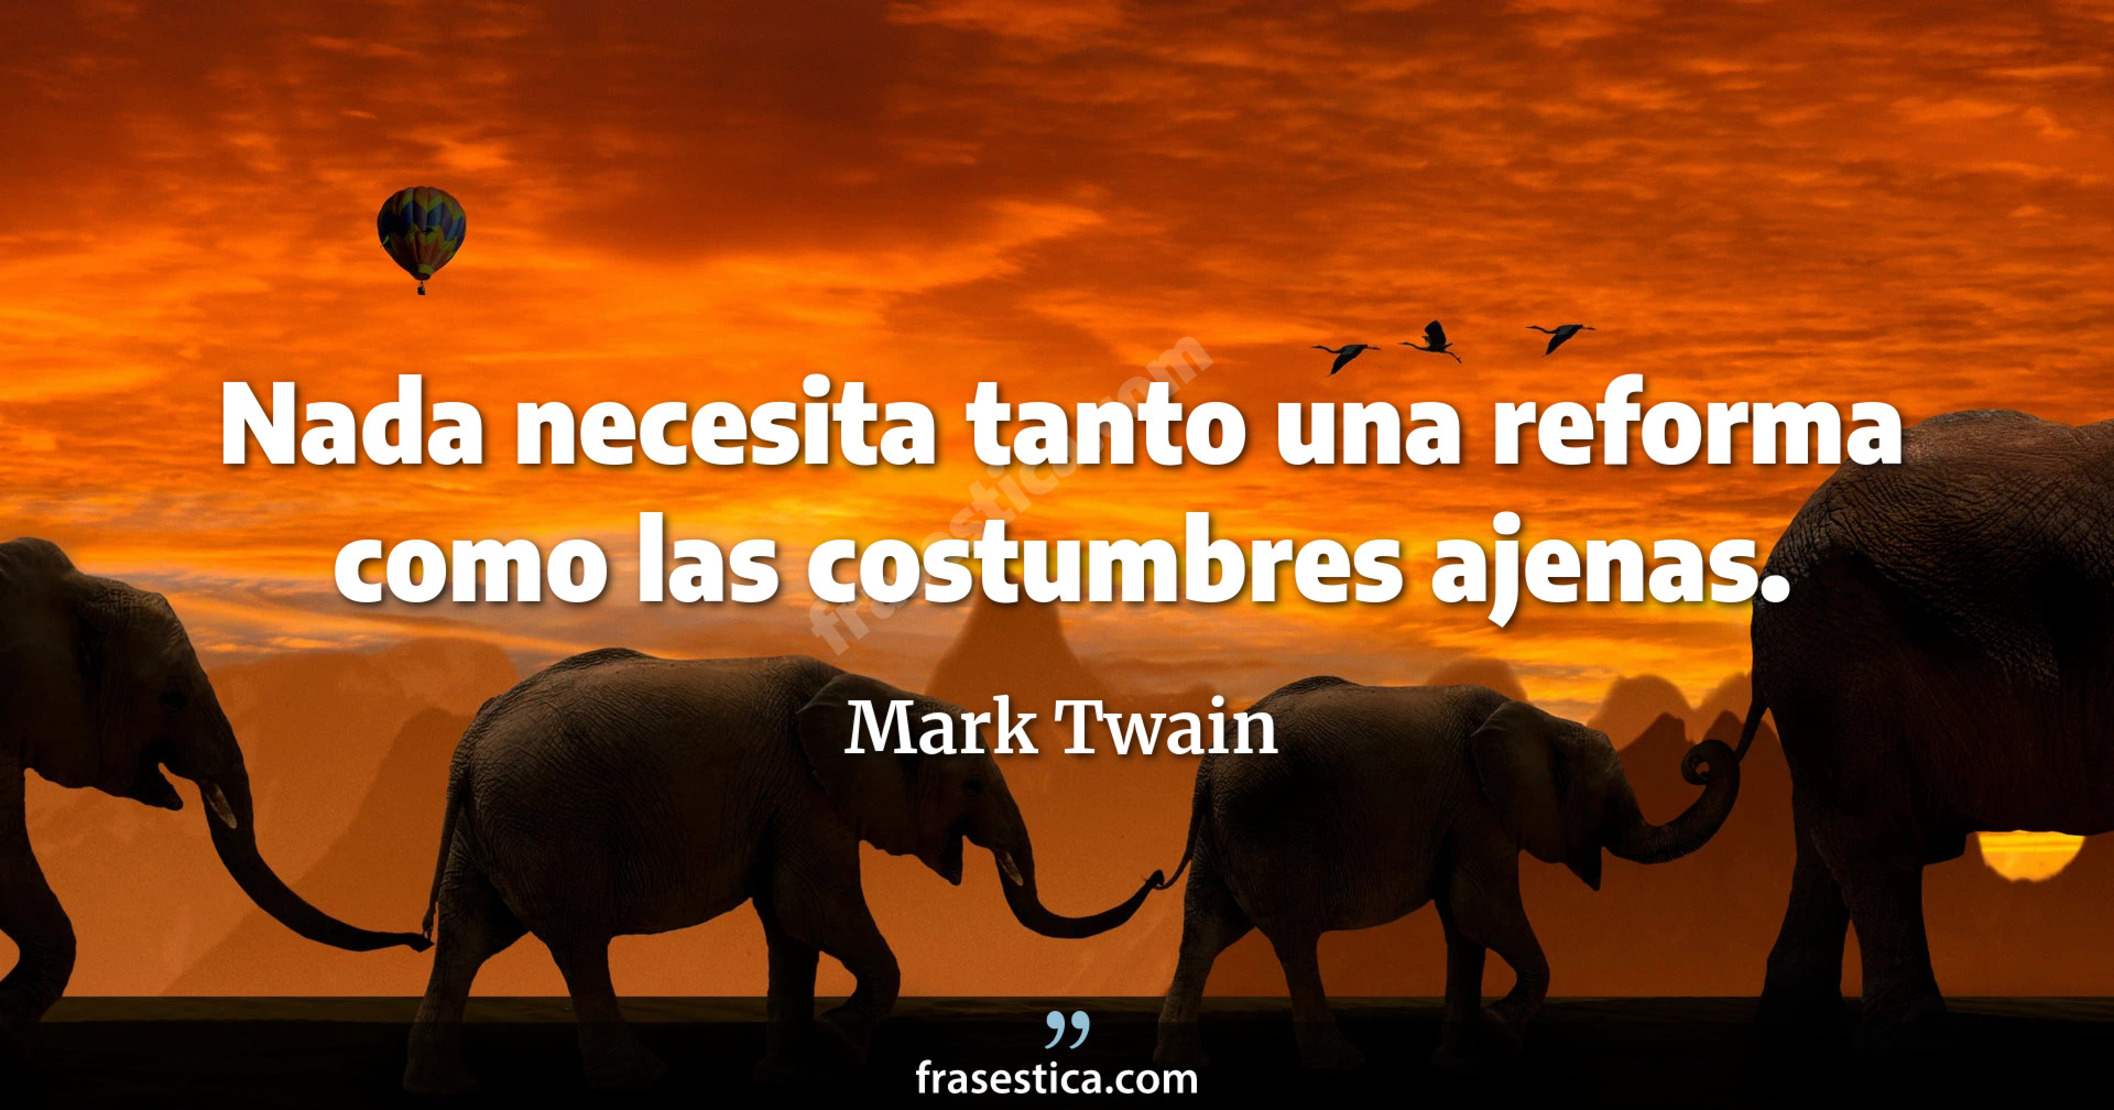 Nada necesita tanto una reforma como las costumbres ajenas. - Mark Twain